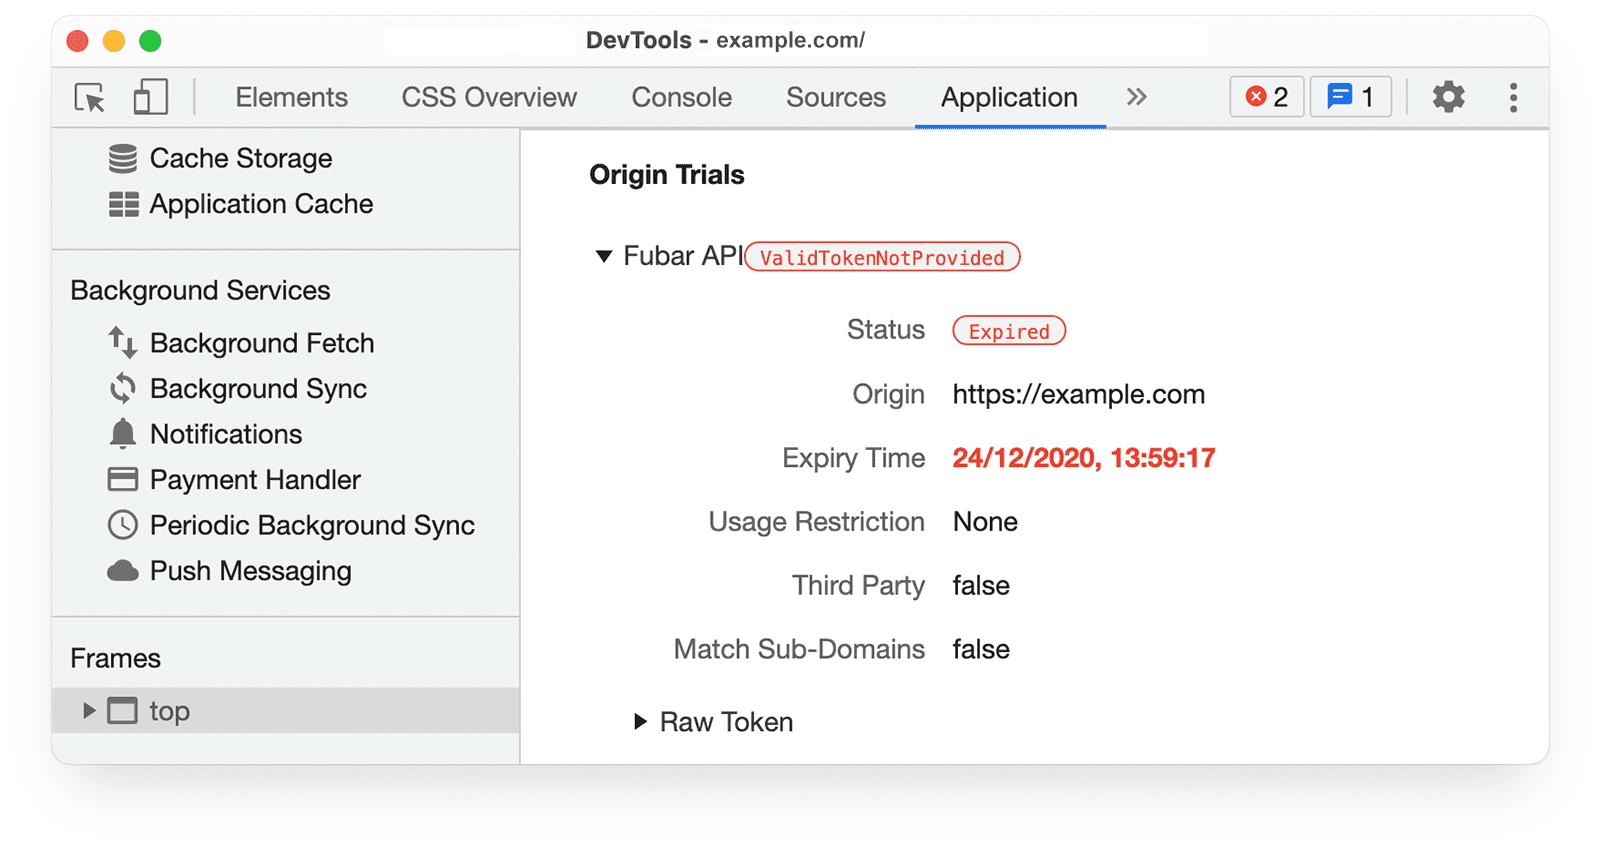 معلومات عن تجارب المصدر في Chrome DevTools
في لوحة التطبيق تعرض واجهة صالحة للرمز المميّز لحالة البيانات وحالة انتهاء الصلاحية